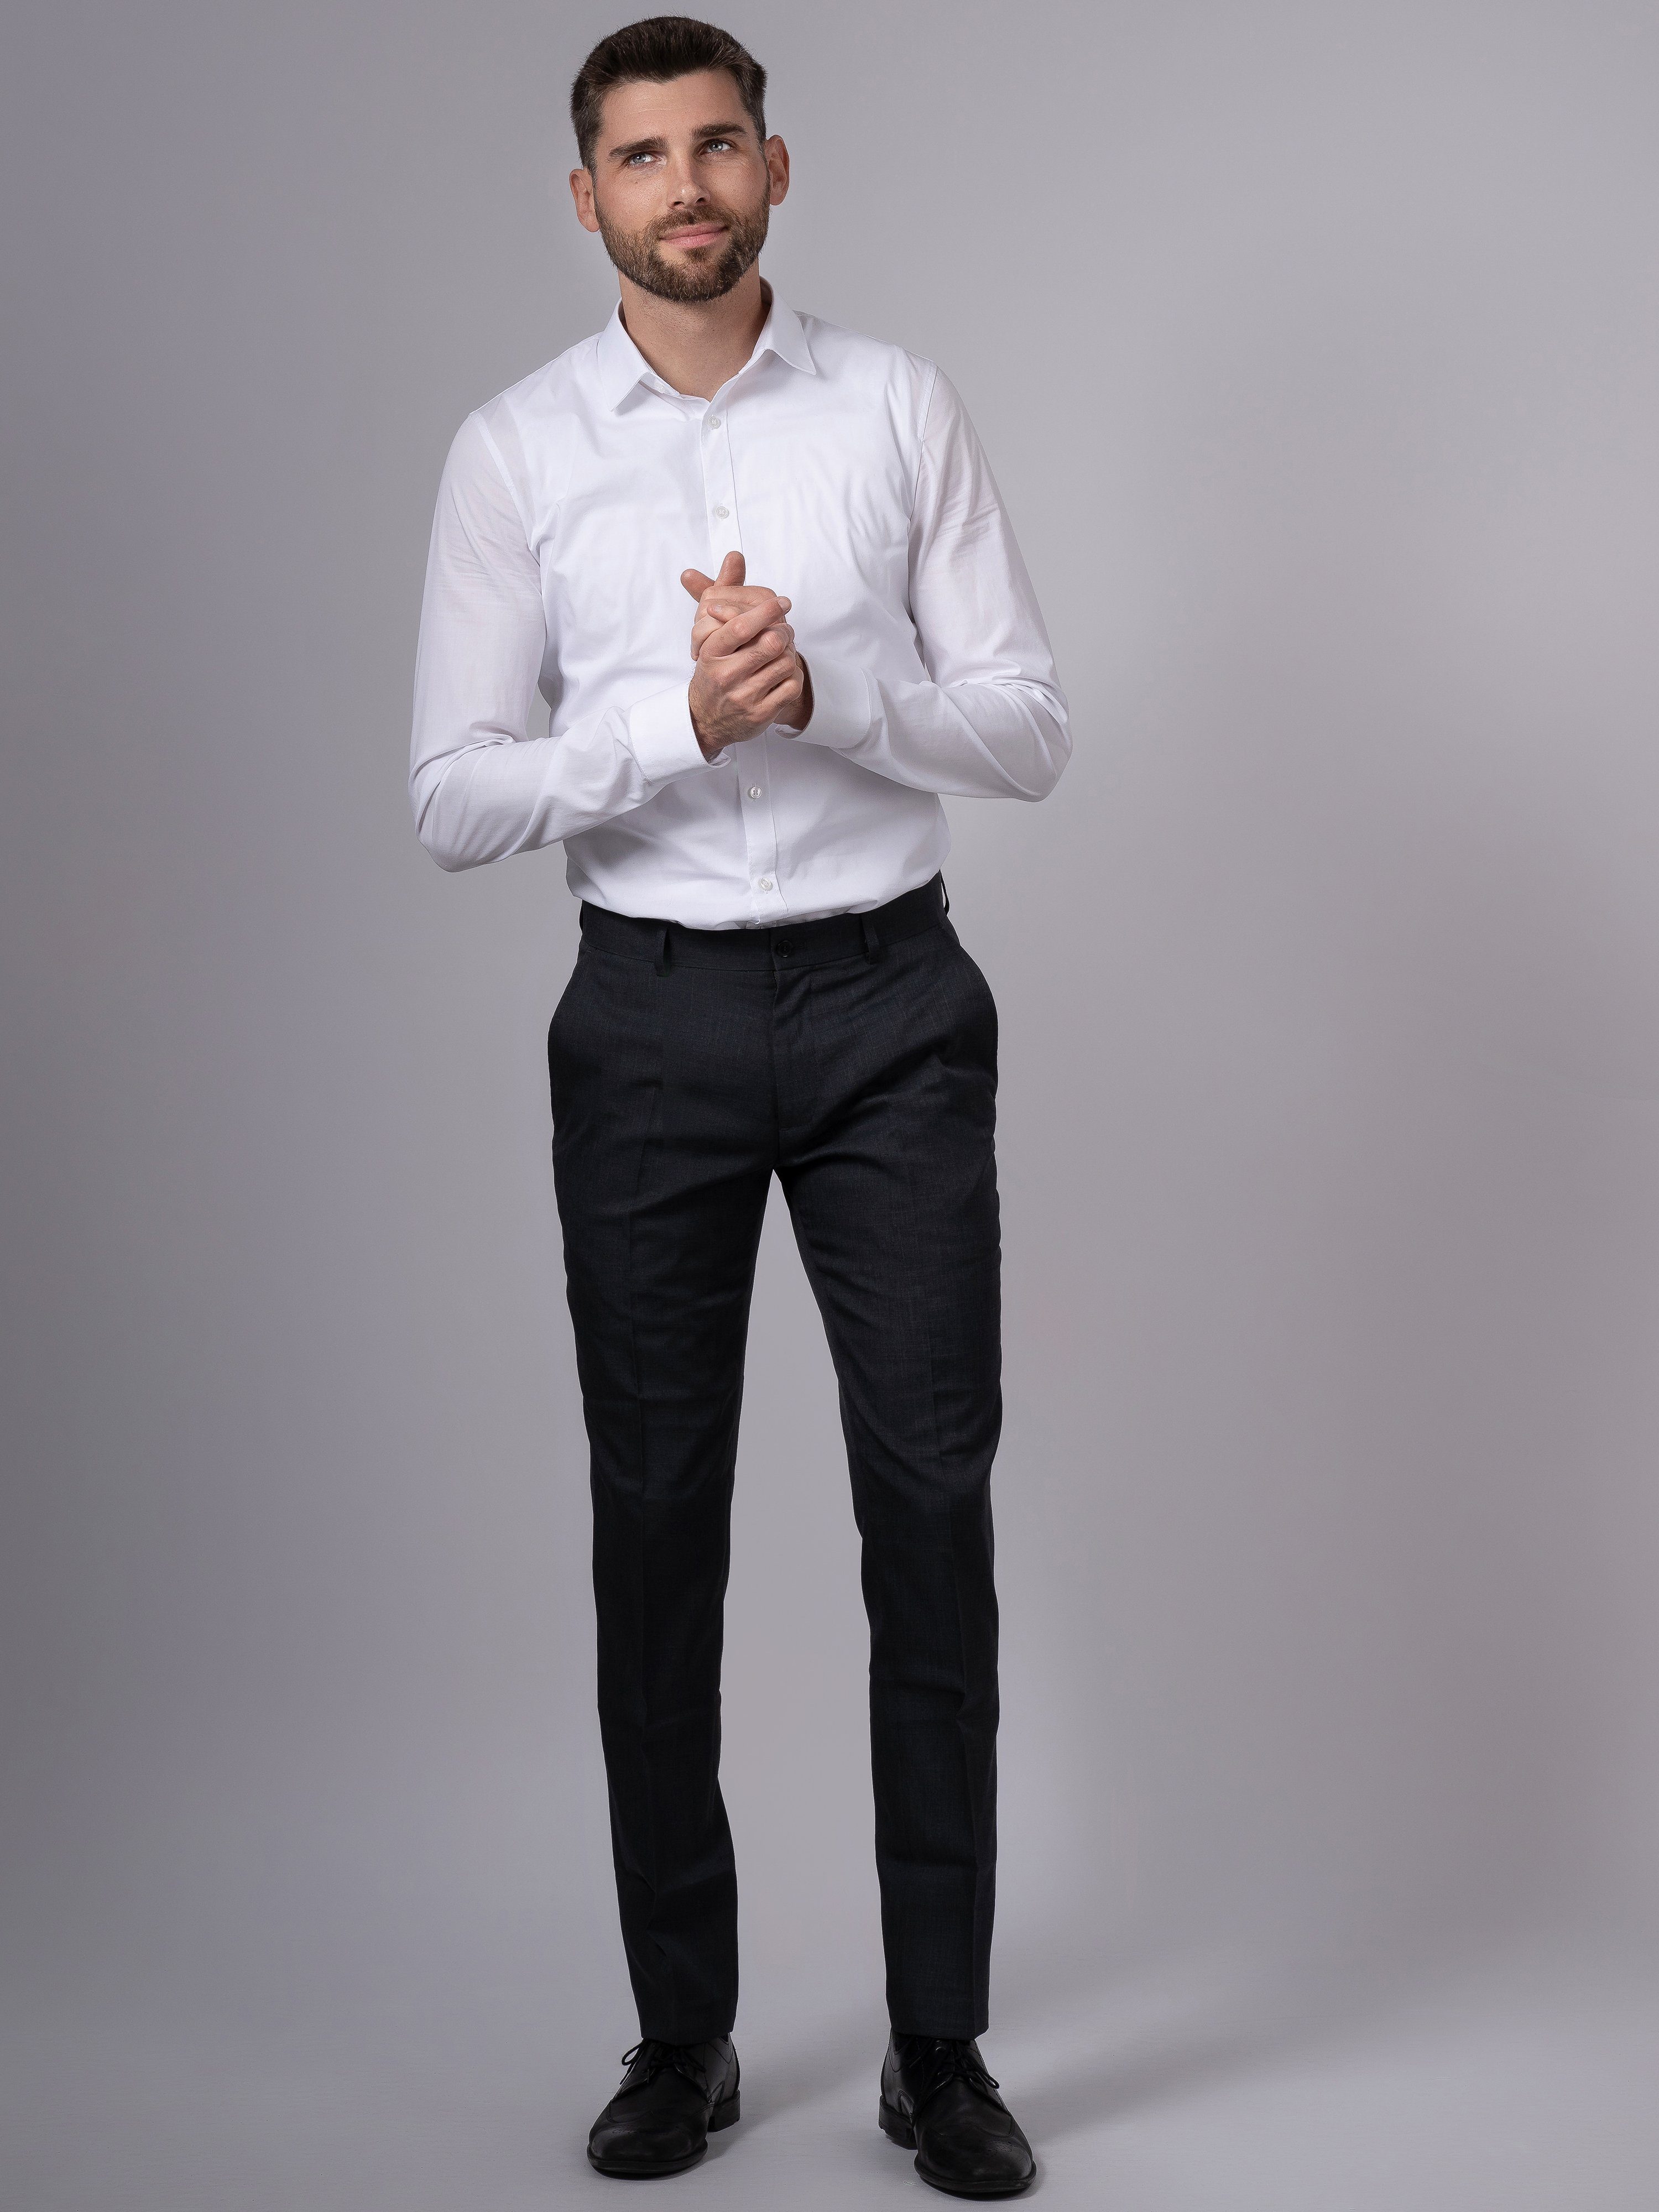 Hirschthal Anzughose Herren und Kurz-, Regular-Fit Anzughose Normalgrößen Lang- in Grau Slim-Fit Business und